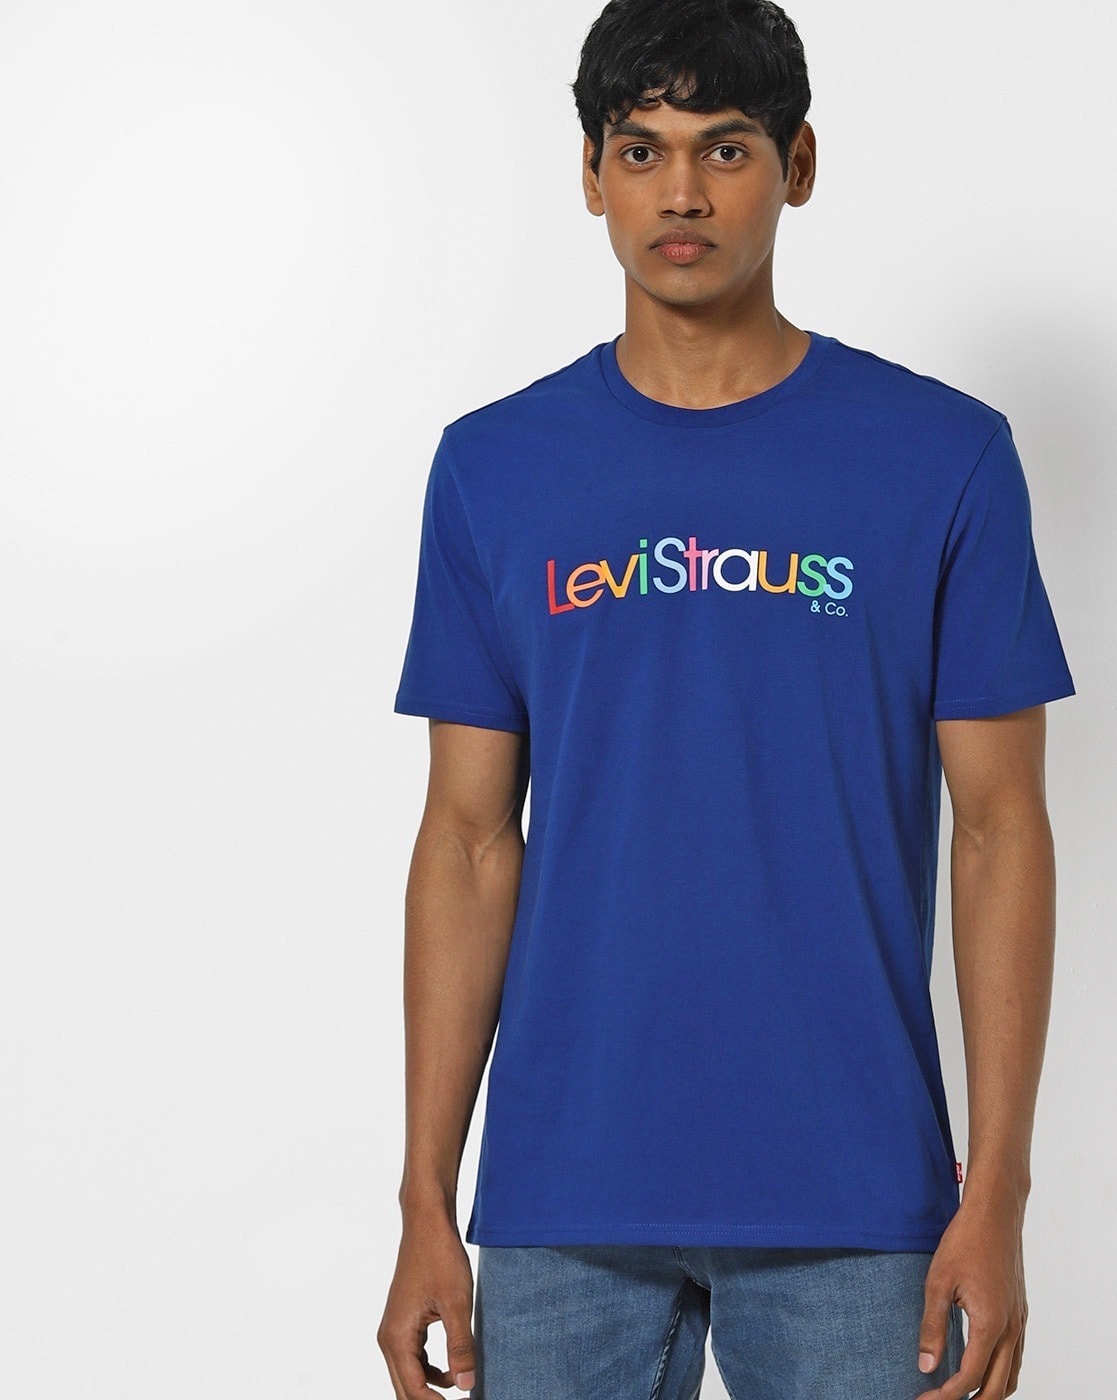 levis tshirt blue